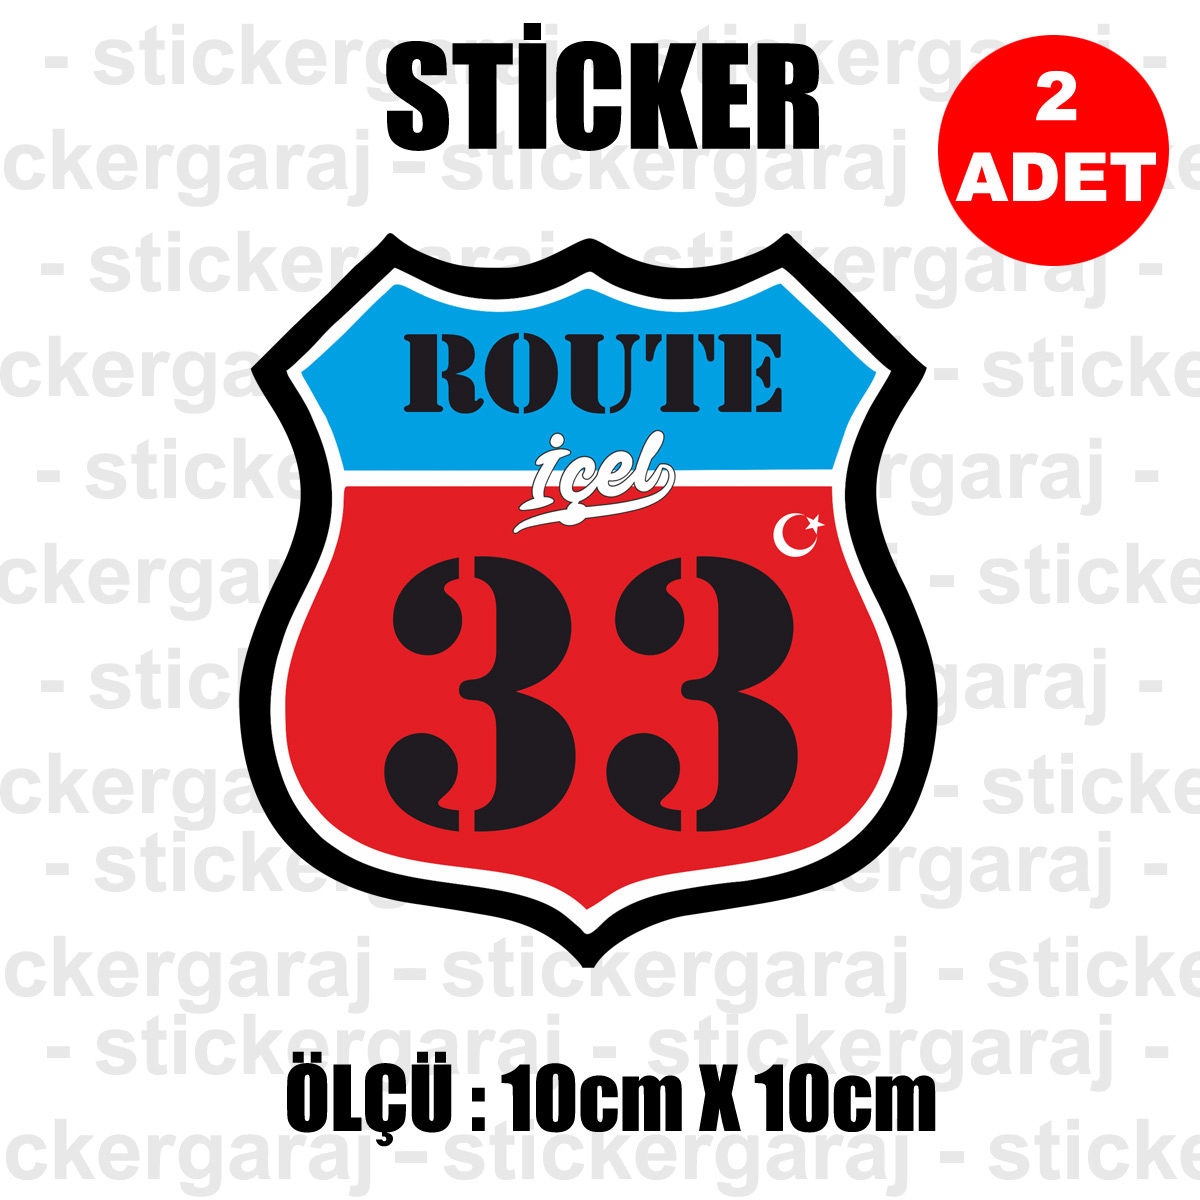 33 ICEL - 33 içel Rota İl Kodu Sticker